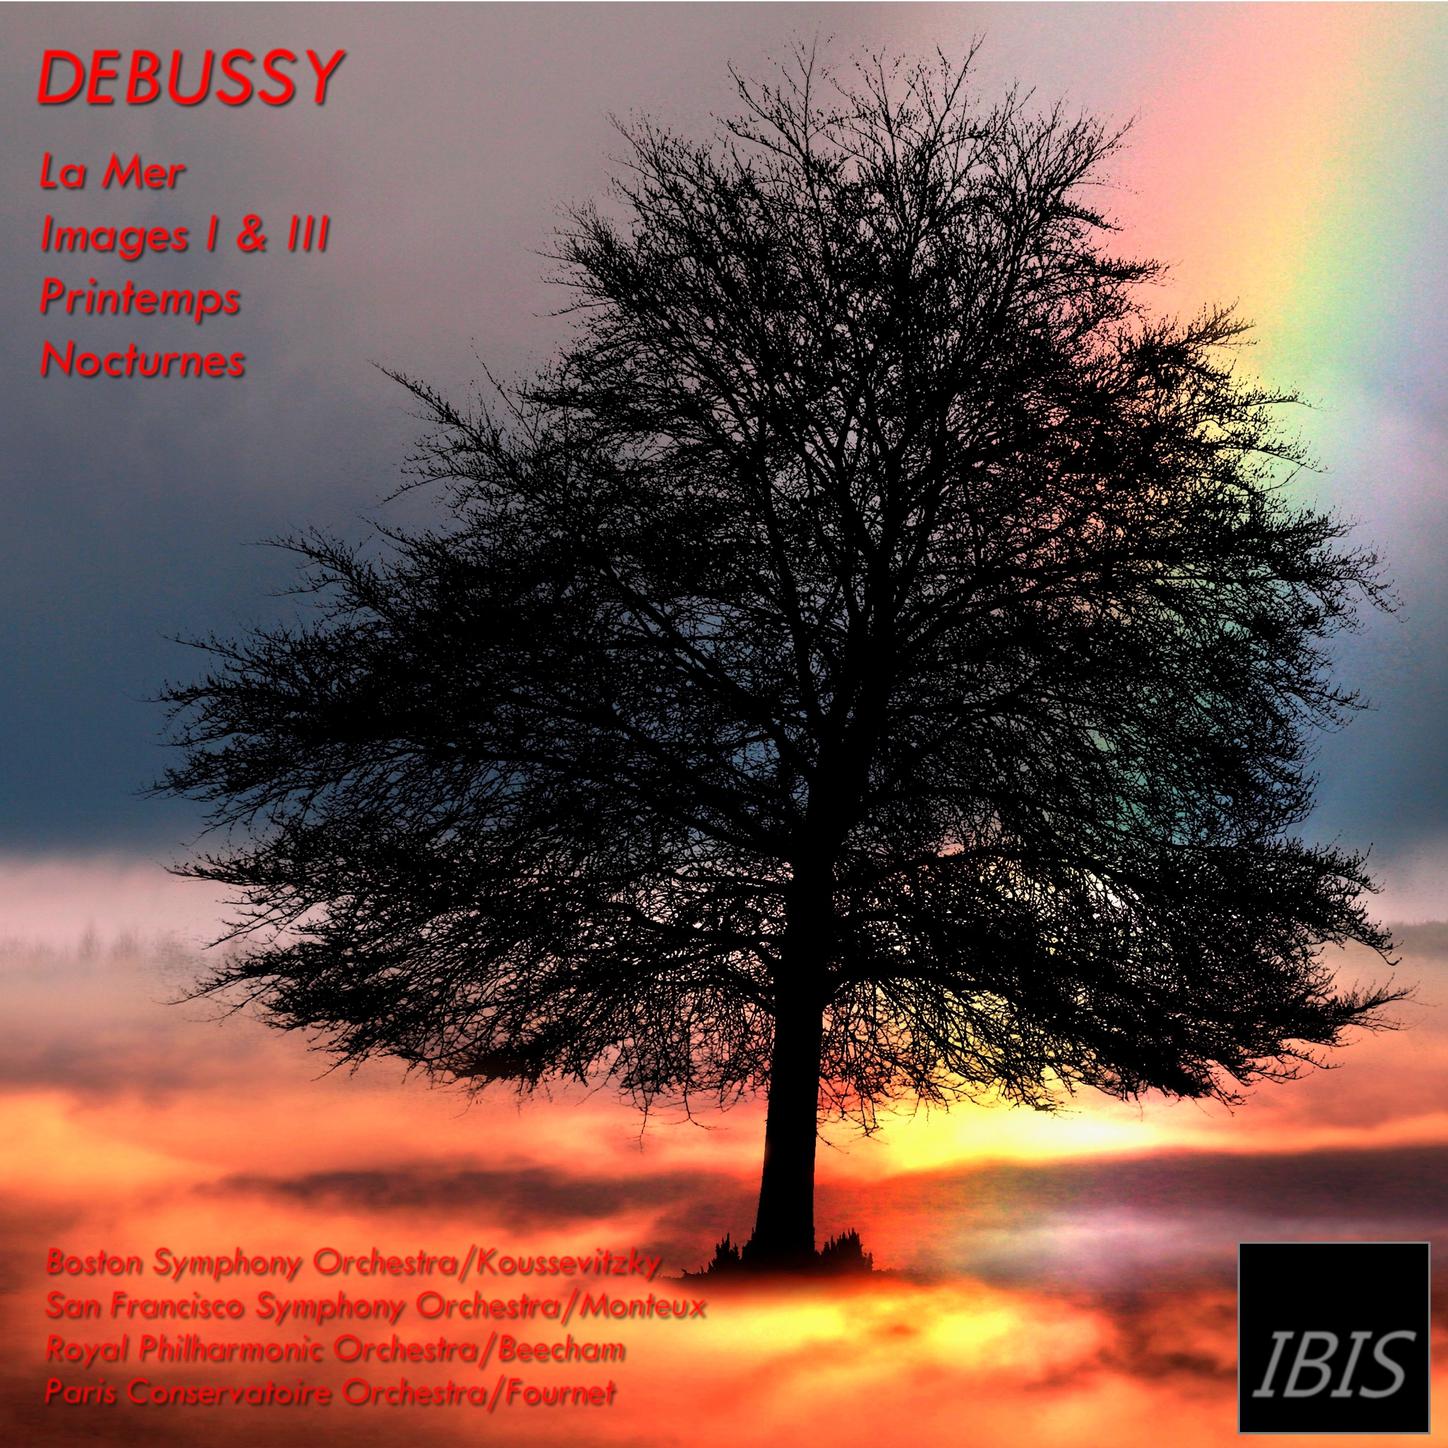 Debussy: La mer - Images I & III - Printemps - Nocturnes